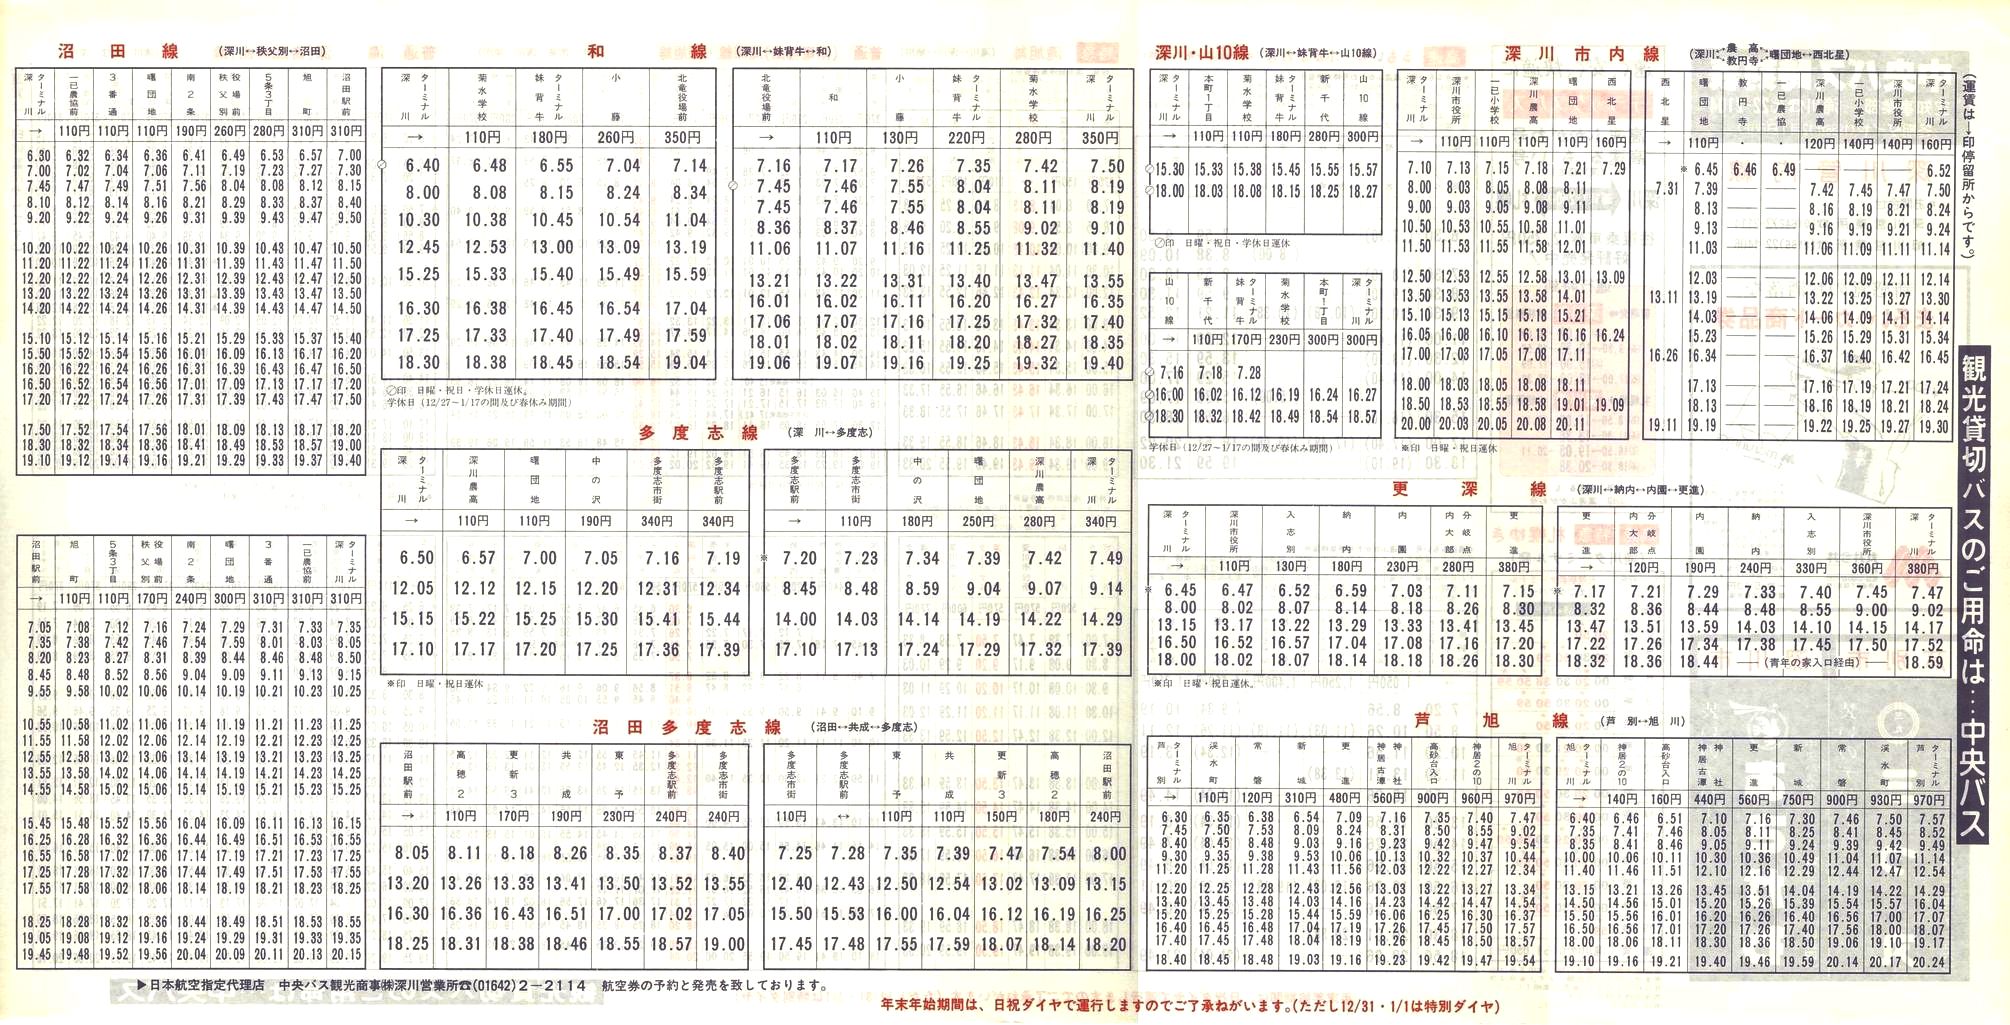 1988-12-01改正_北海道中央バス(空知)_深川管内線時刻表裏面